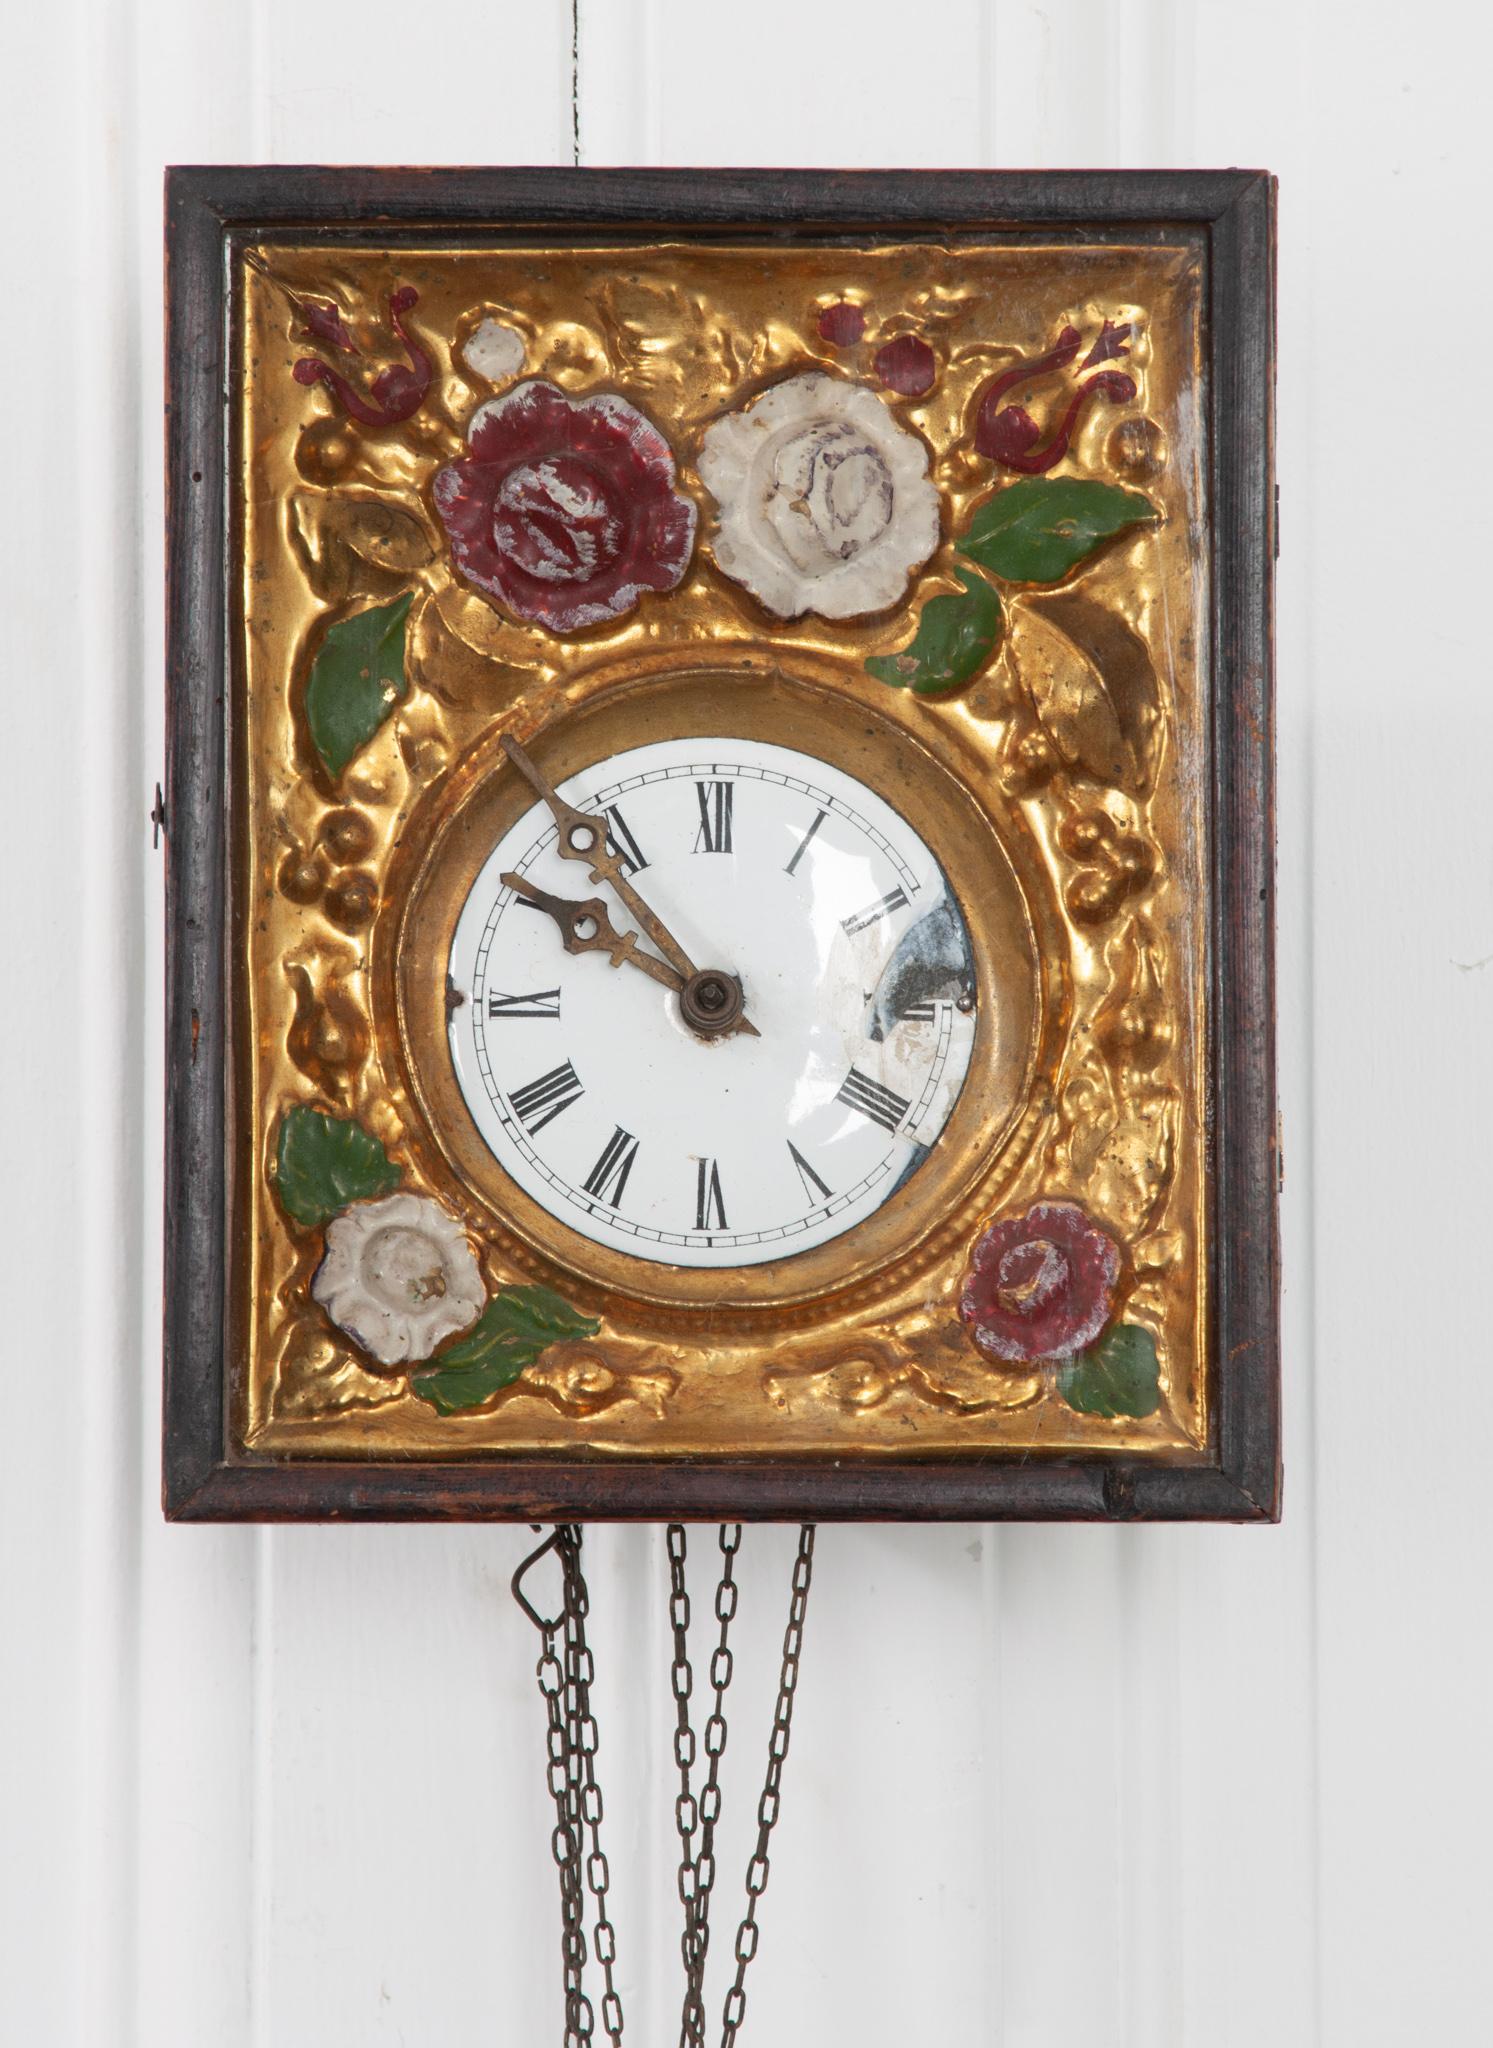 Diese gerahmte französische Uhr aus dem 19. Jahrhundert funktioniert zwar nicht mehr, aber die Schönheit ihrer Komposition lässt sie als Kunstwerk weiterleben. Hinter dem Glas ist das Ziffernblatt in eine schön geprägte und bemalte Metallplatte